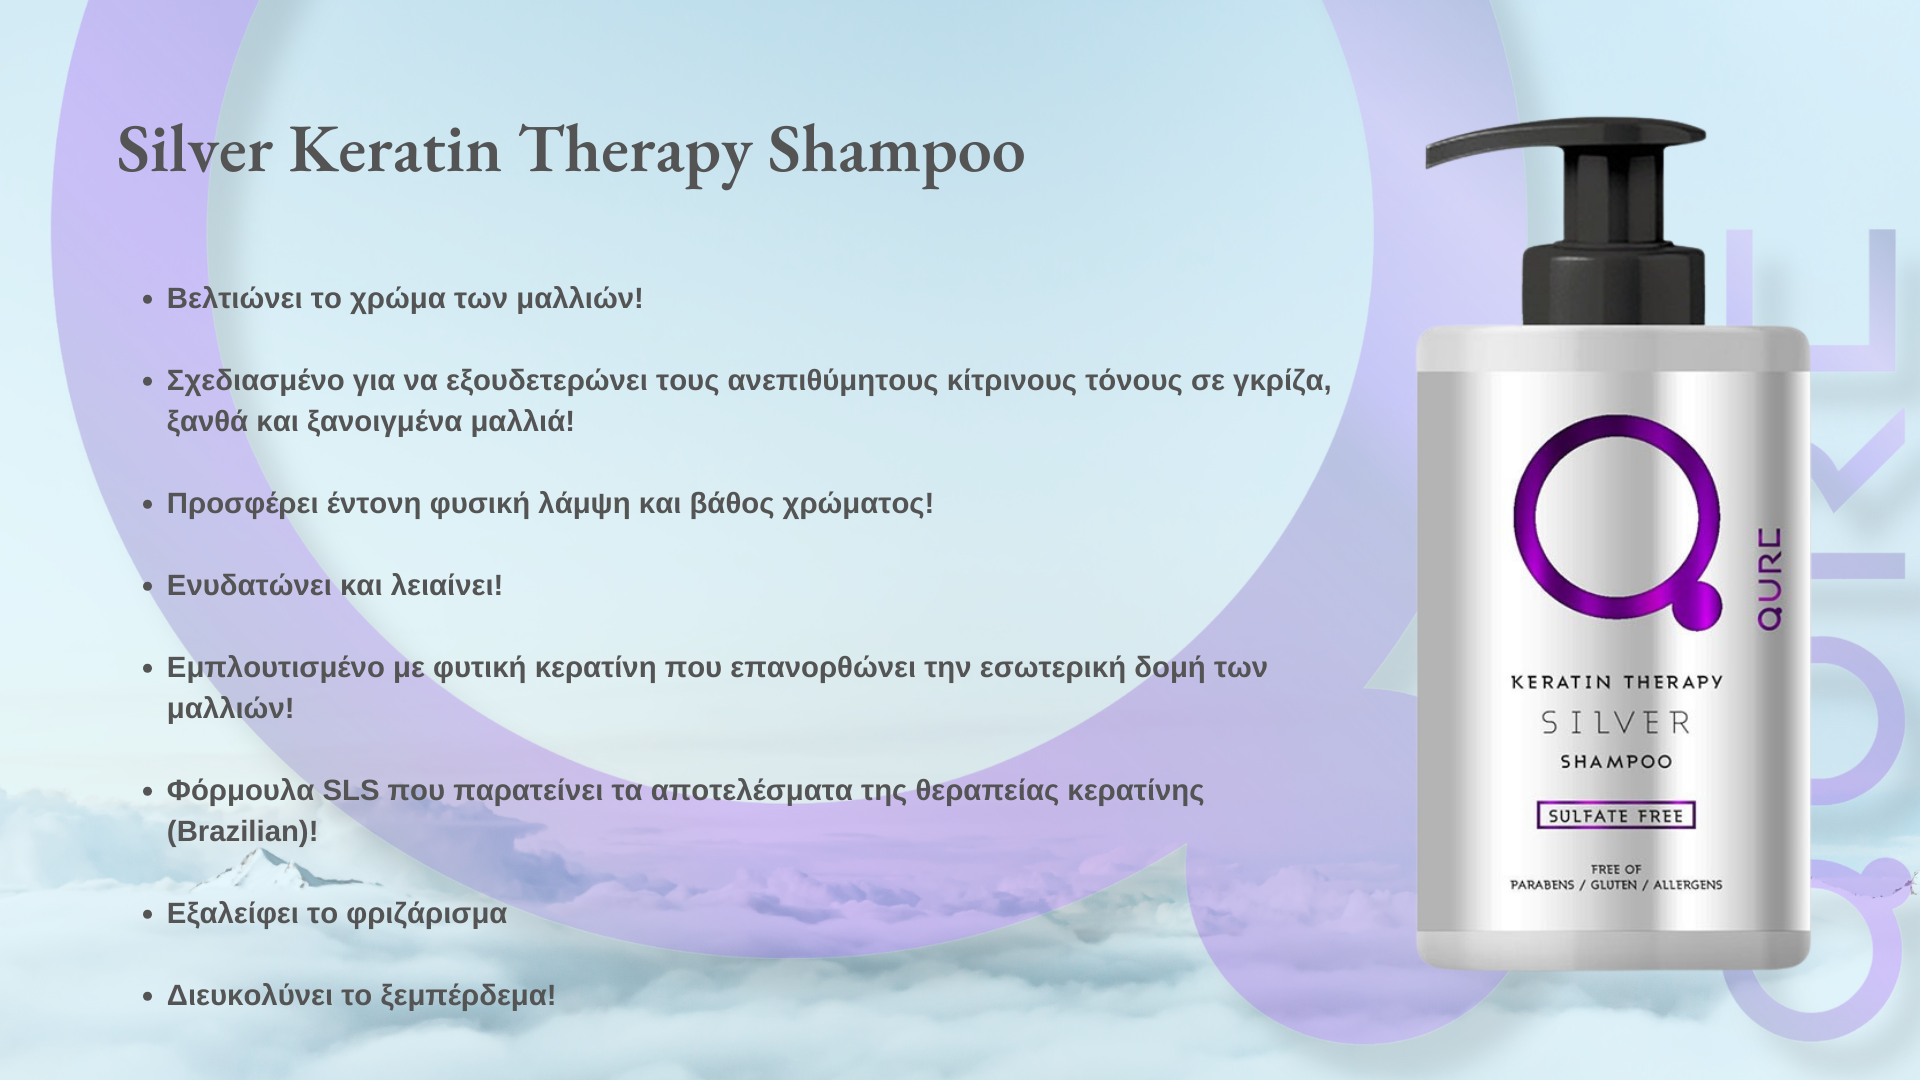 Silver Keratin Therapy Shampoo